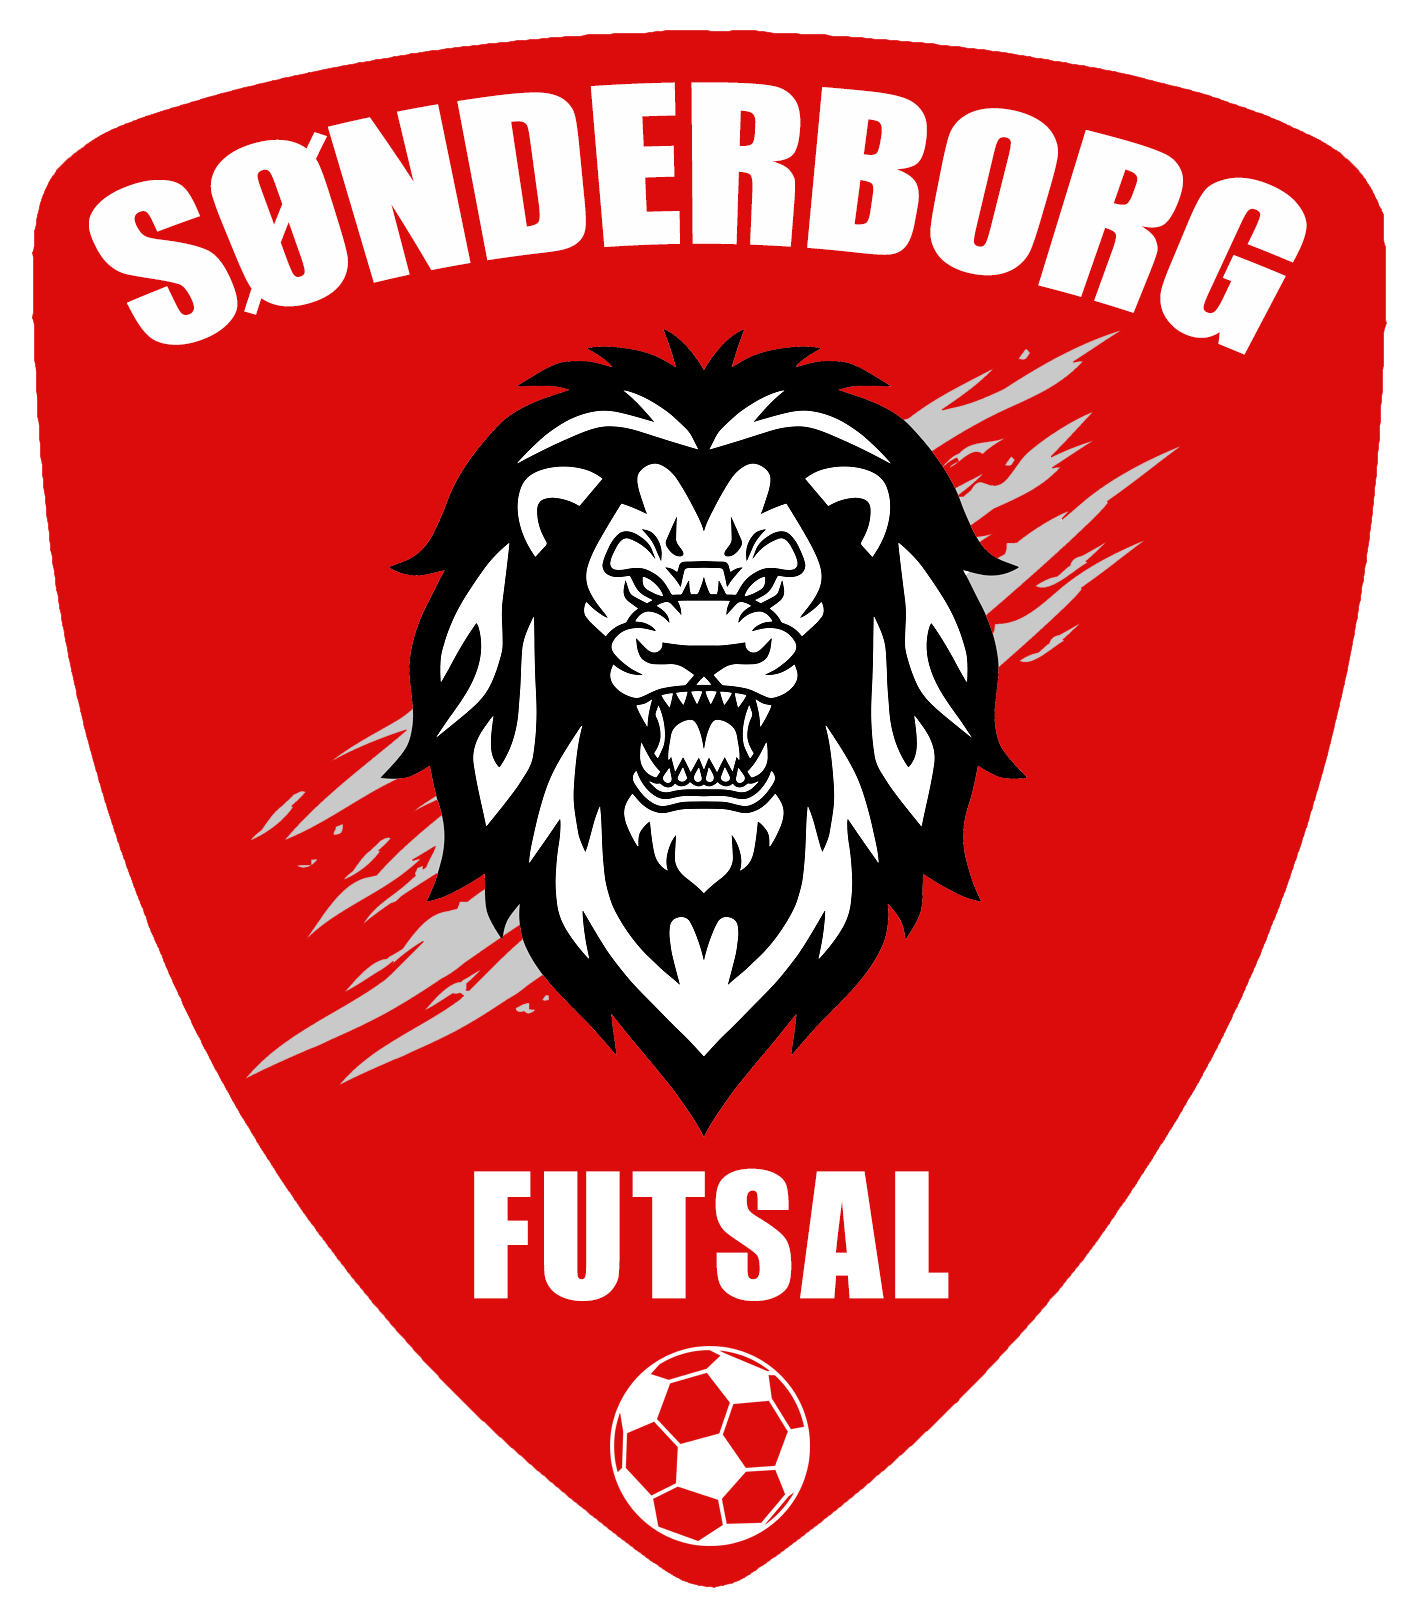 Sønderborg Futsal logo